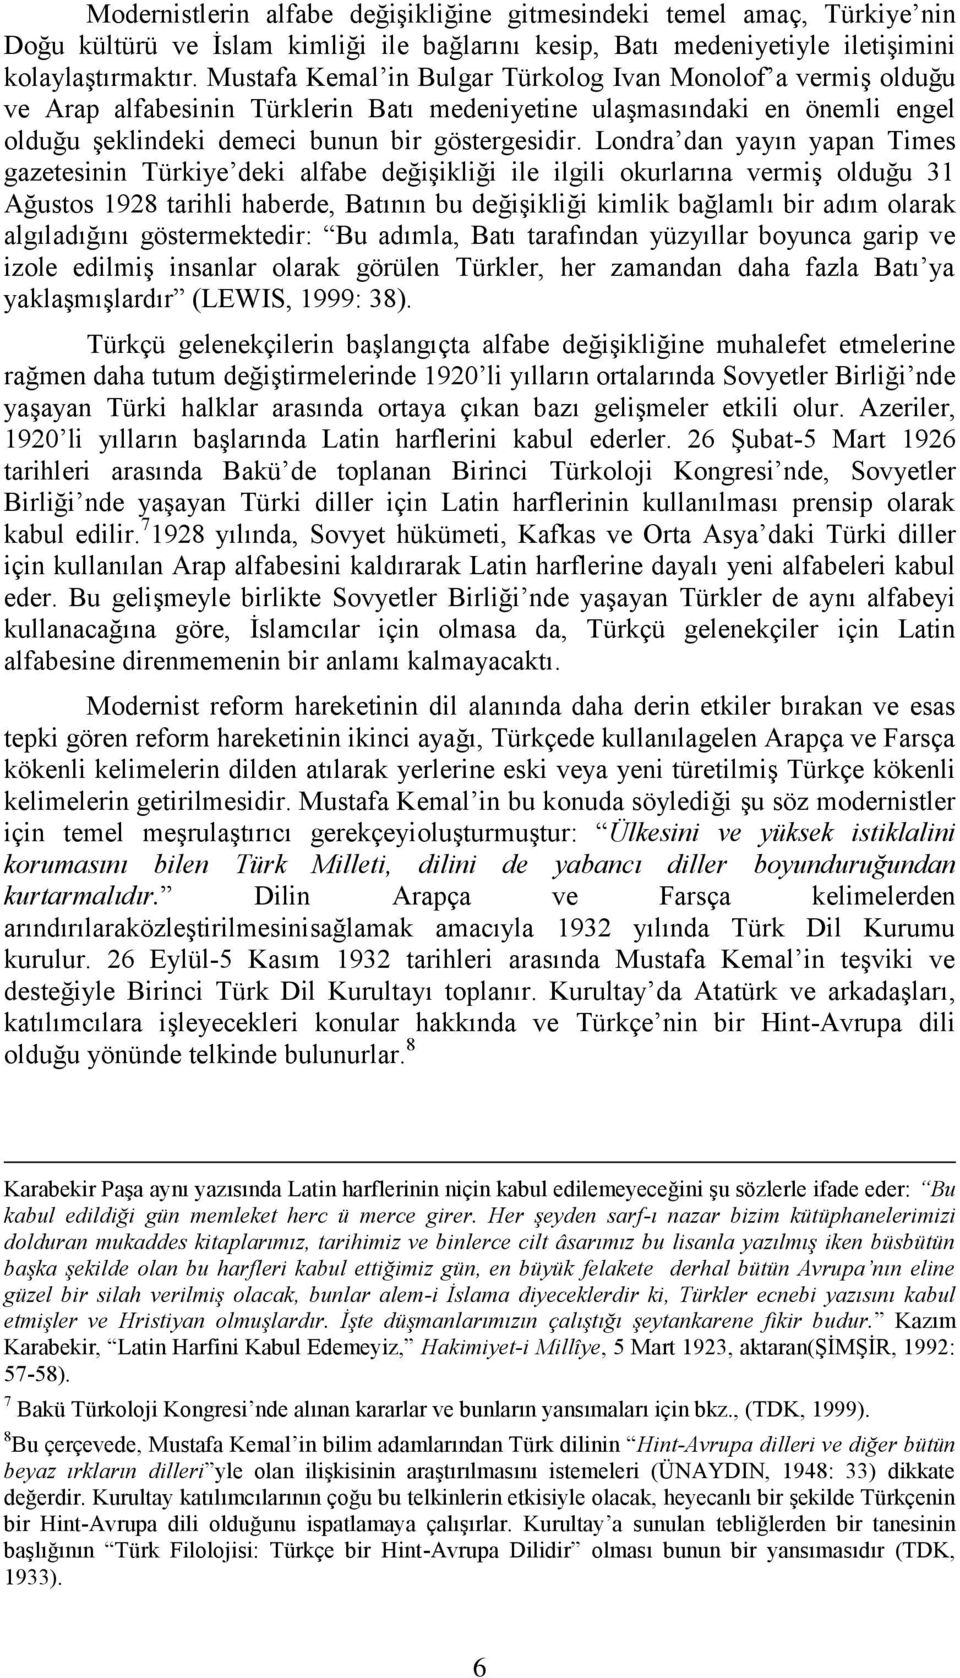 Londra dan yayın yapan Times gazetesinin Türkiye deki alfabe değişikliği ile ilgili okurlarına vermiş olduğu 31 Ağustos 1928 tarihli haberde, Batının bu değişikliği kimlik bağlamlı bir adım olarak